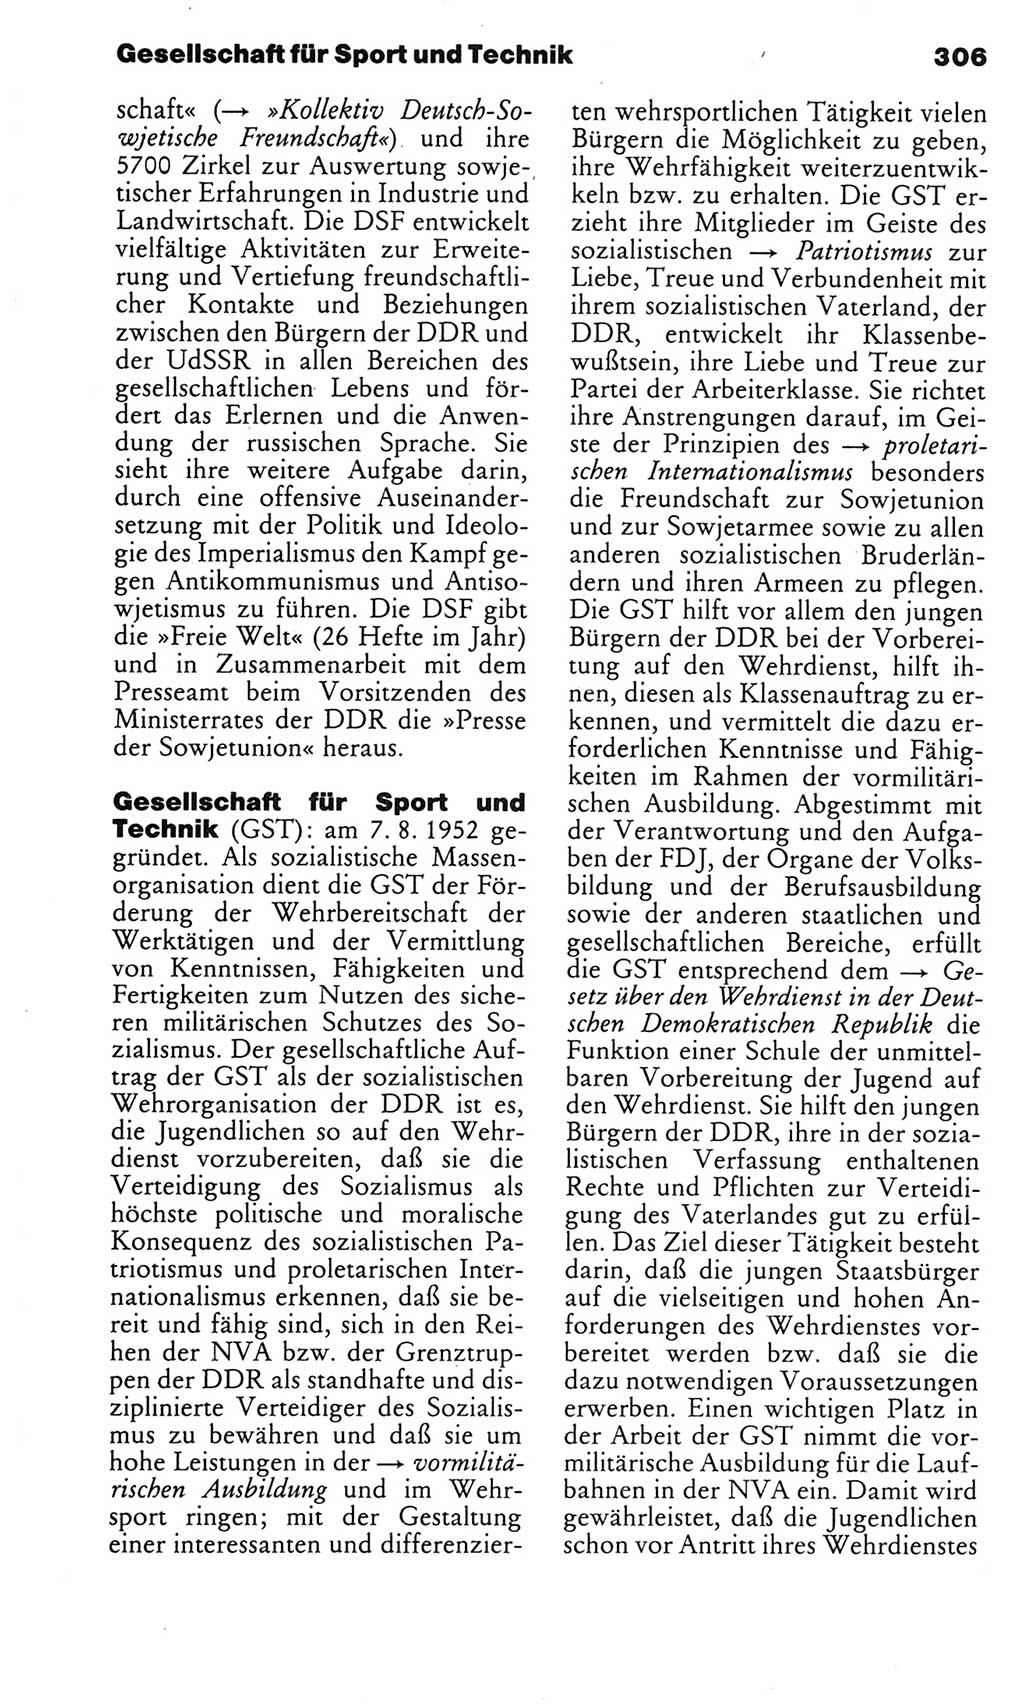 Kleines politisches Wörterbuch [Deutsche Demokratische Republik (DDR)] 1983, Seite 306 (Kl. pol. Wb. DDR 1983, S. 306)